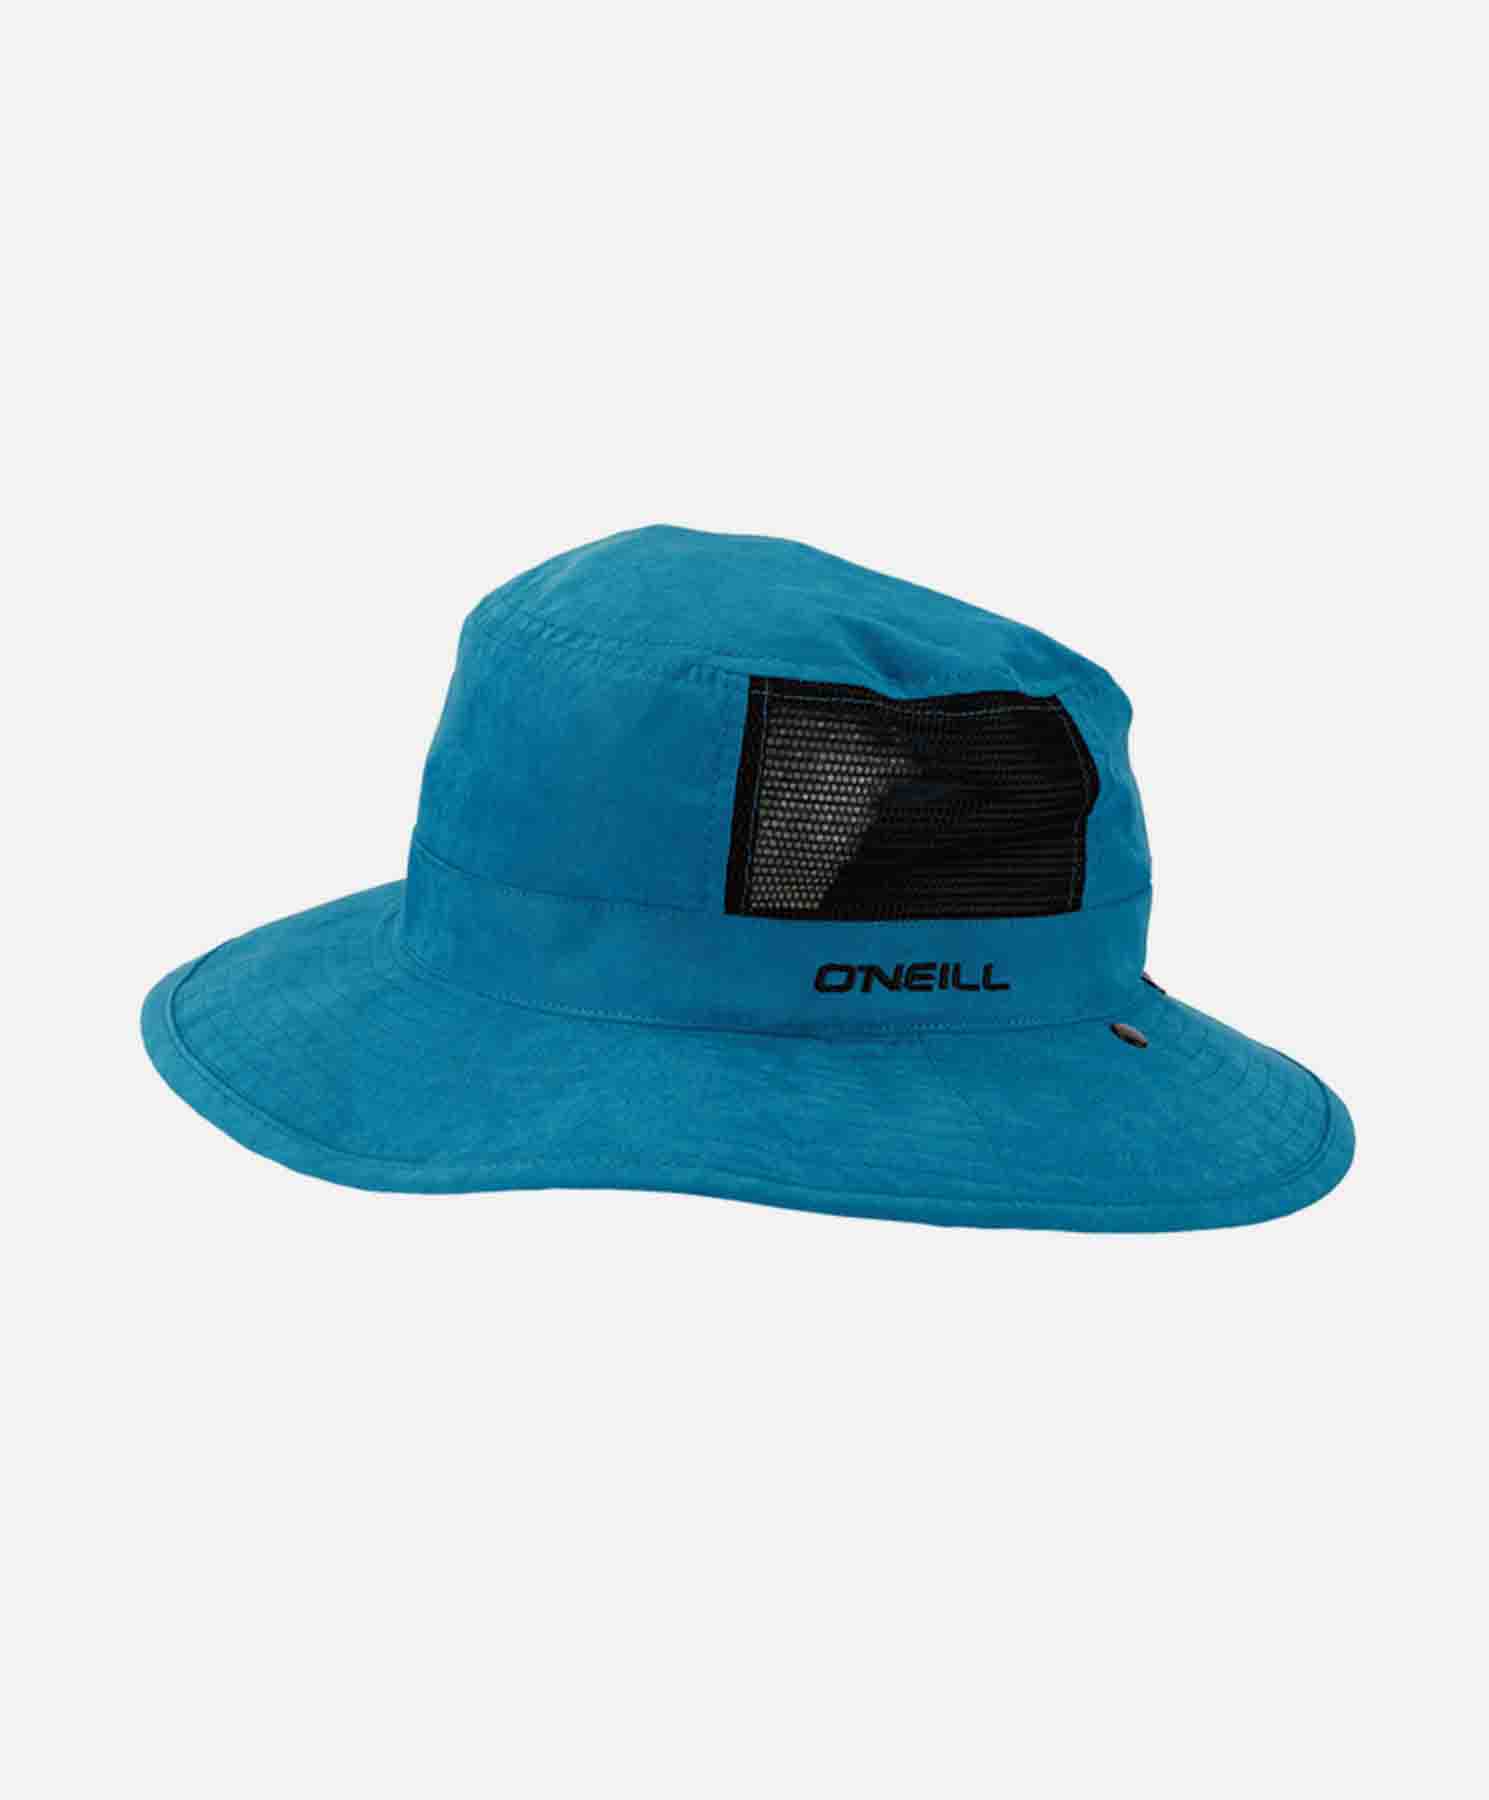 오닐 한정모델 UVP 서프햇 - 619928 UVP HAT BLUE GREEN